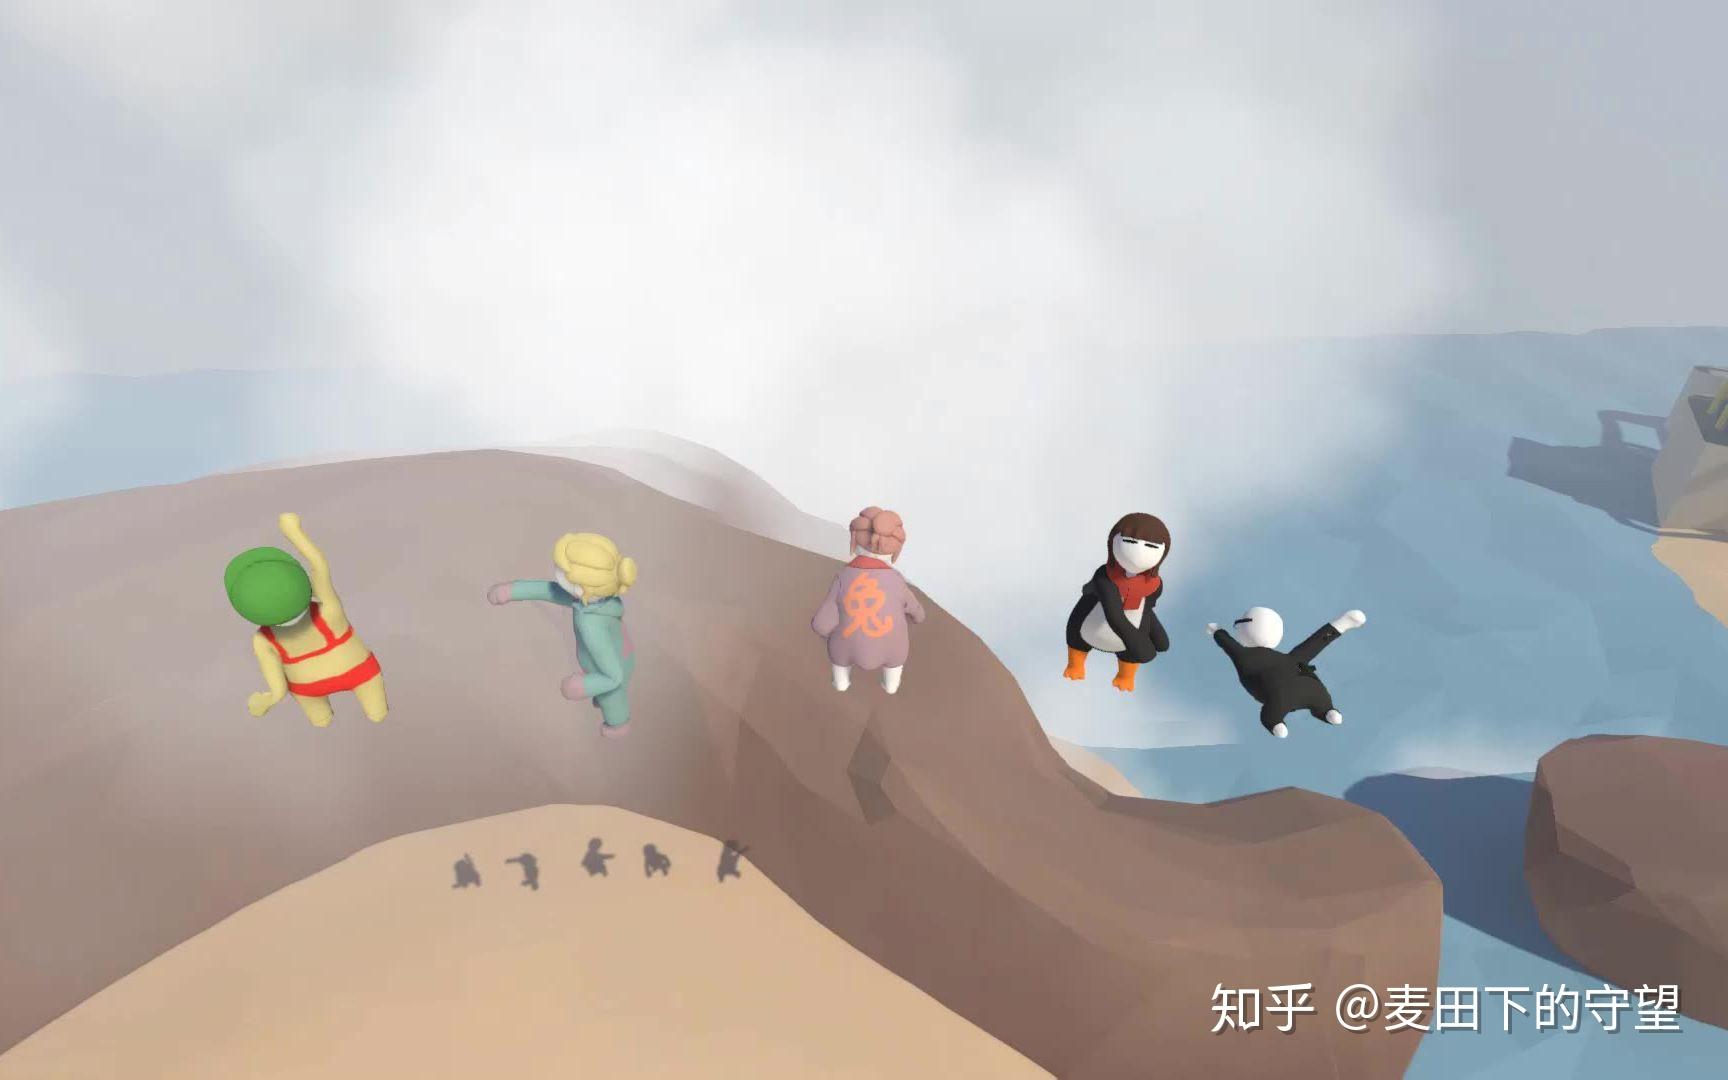 年轻情侣在家玩VR游戏-蓝牛仔影像-中国原创广告影像素材